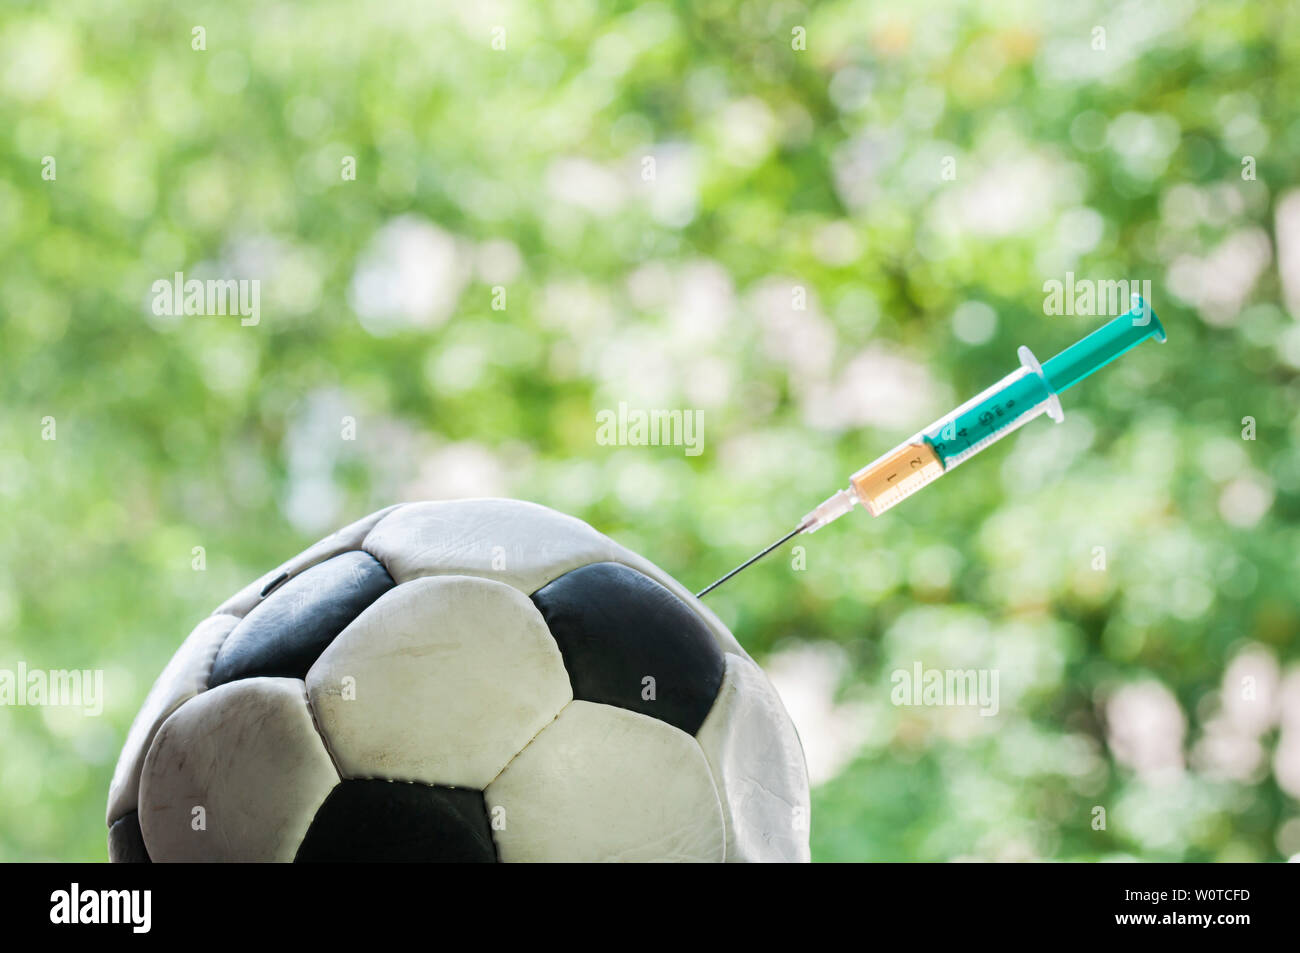 Ein Fussball bekommt eine Injektion mit einer Spritze, il doping im Sport. Foto Stock